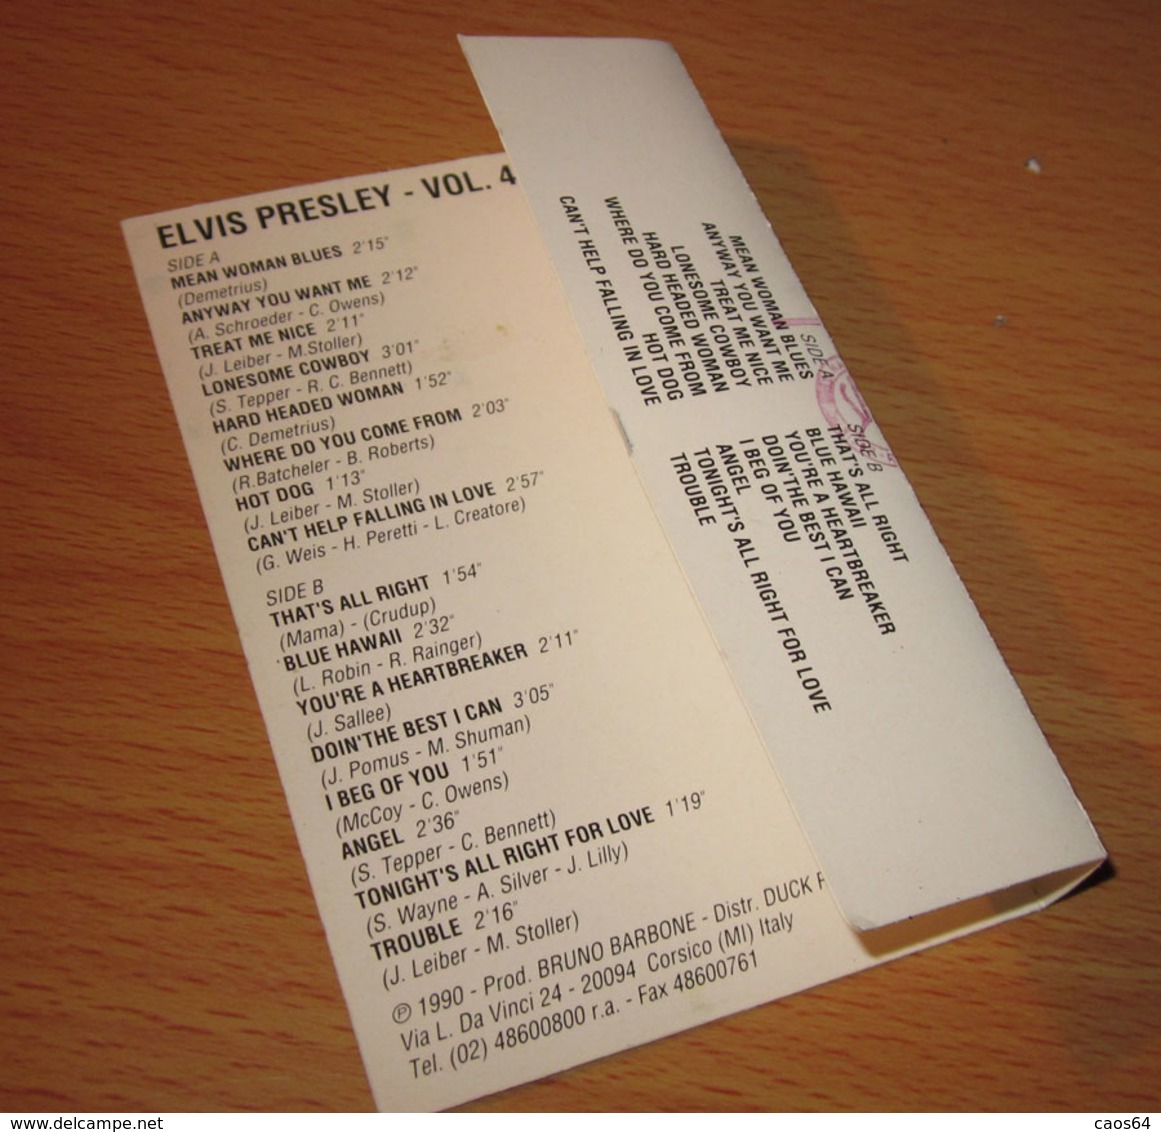 Elvis Presley Vol. 4 - Audio Tapes